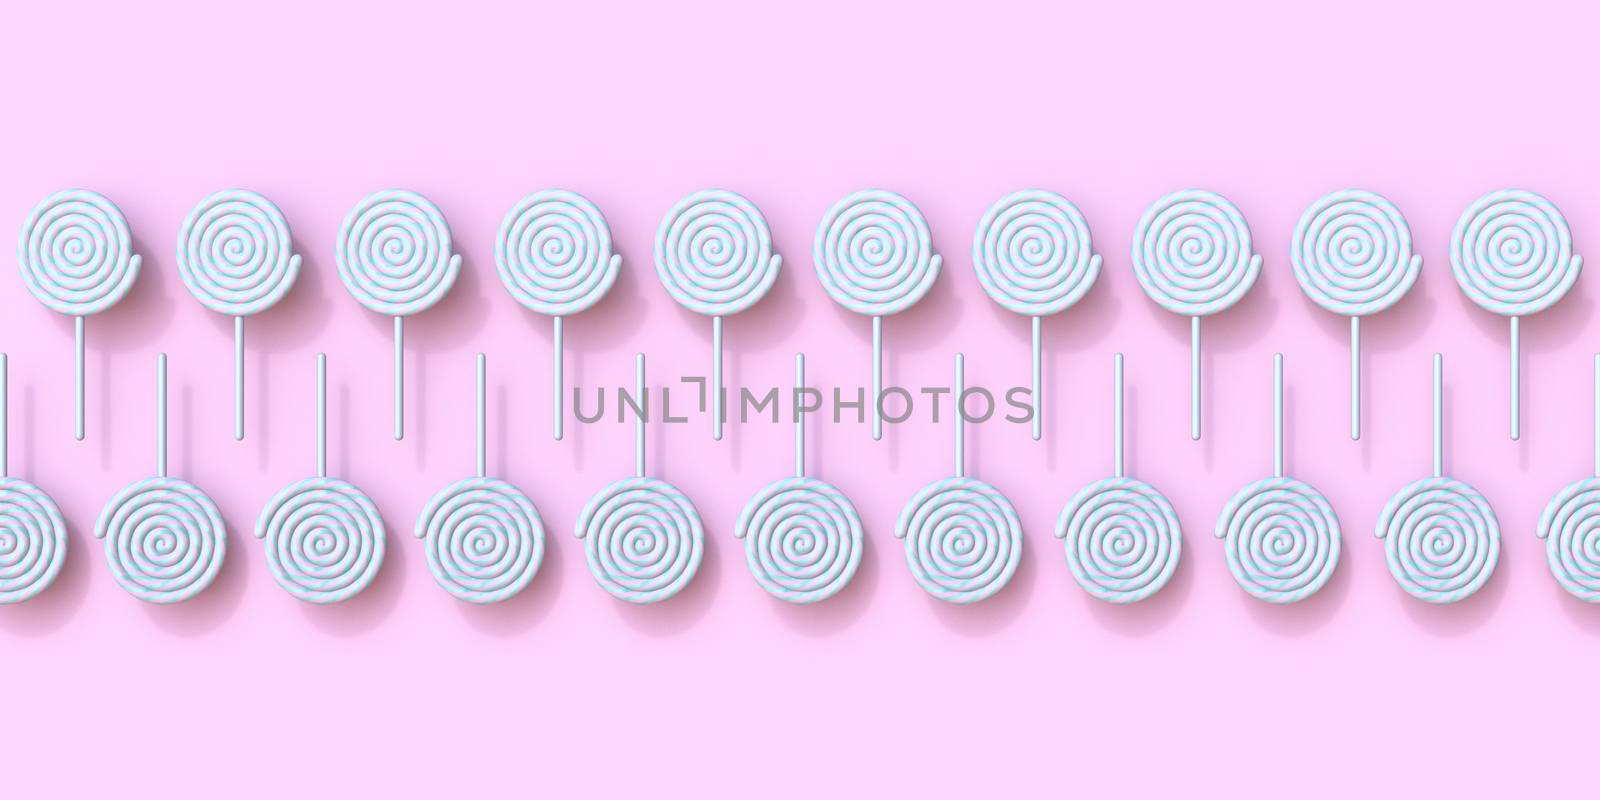 Lollipops arranged in two rows 3D by djmilic